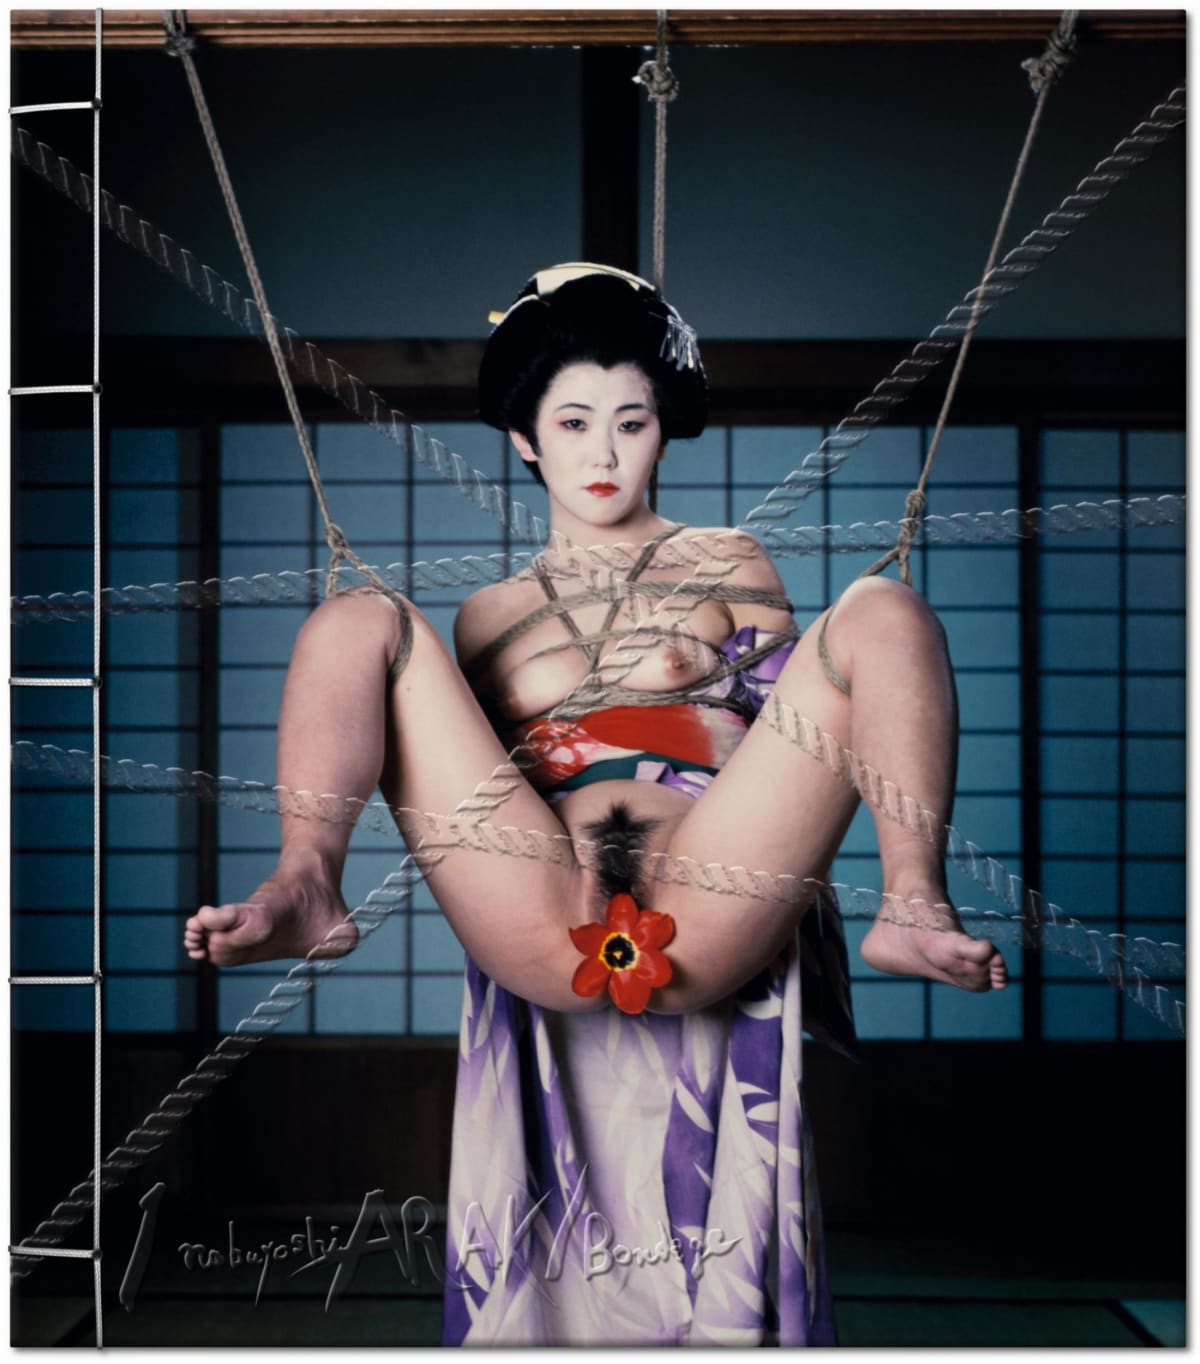 Araki. Bondage. Art Edition No. 51–100 ‘Untitled, 1992’